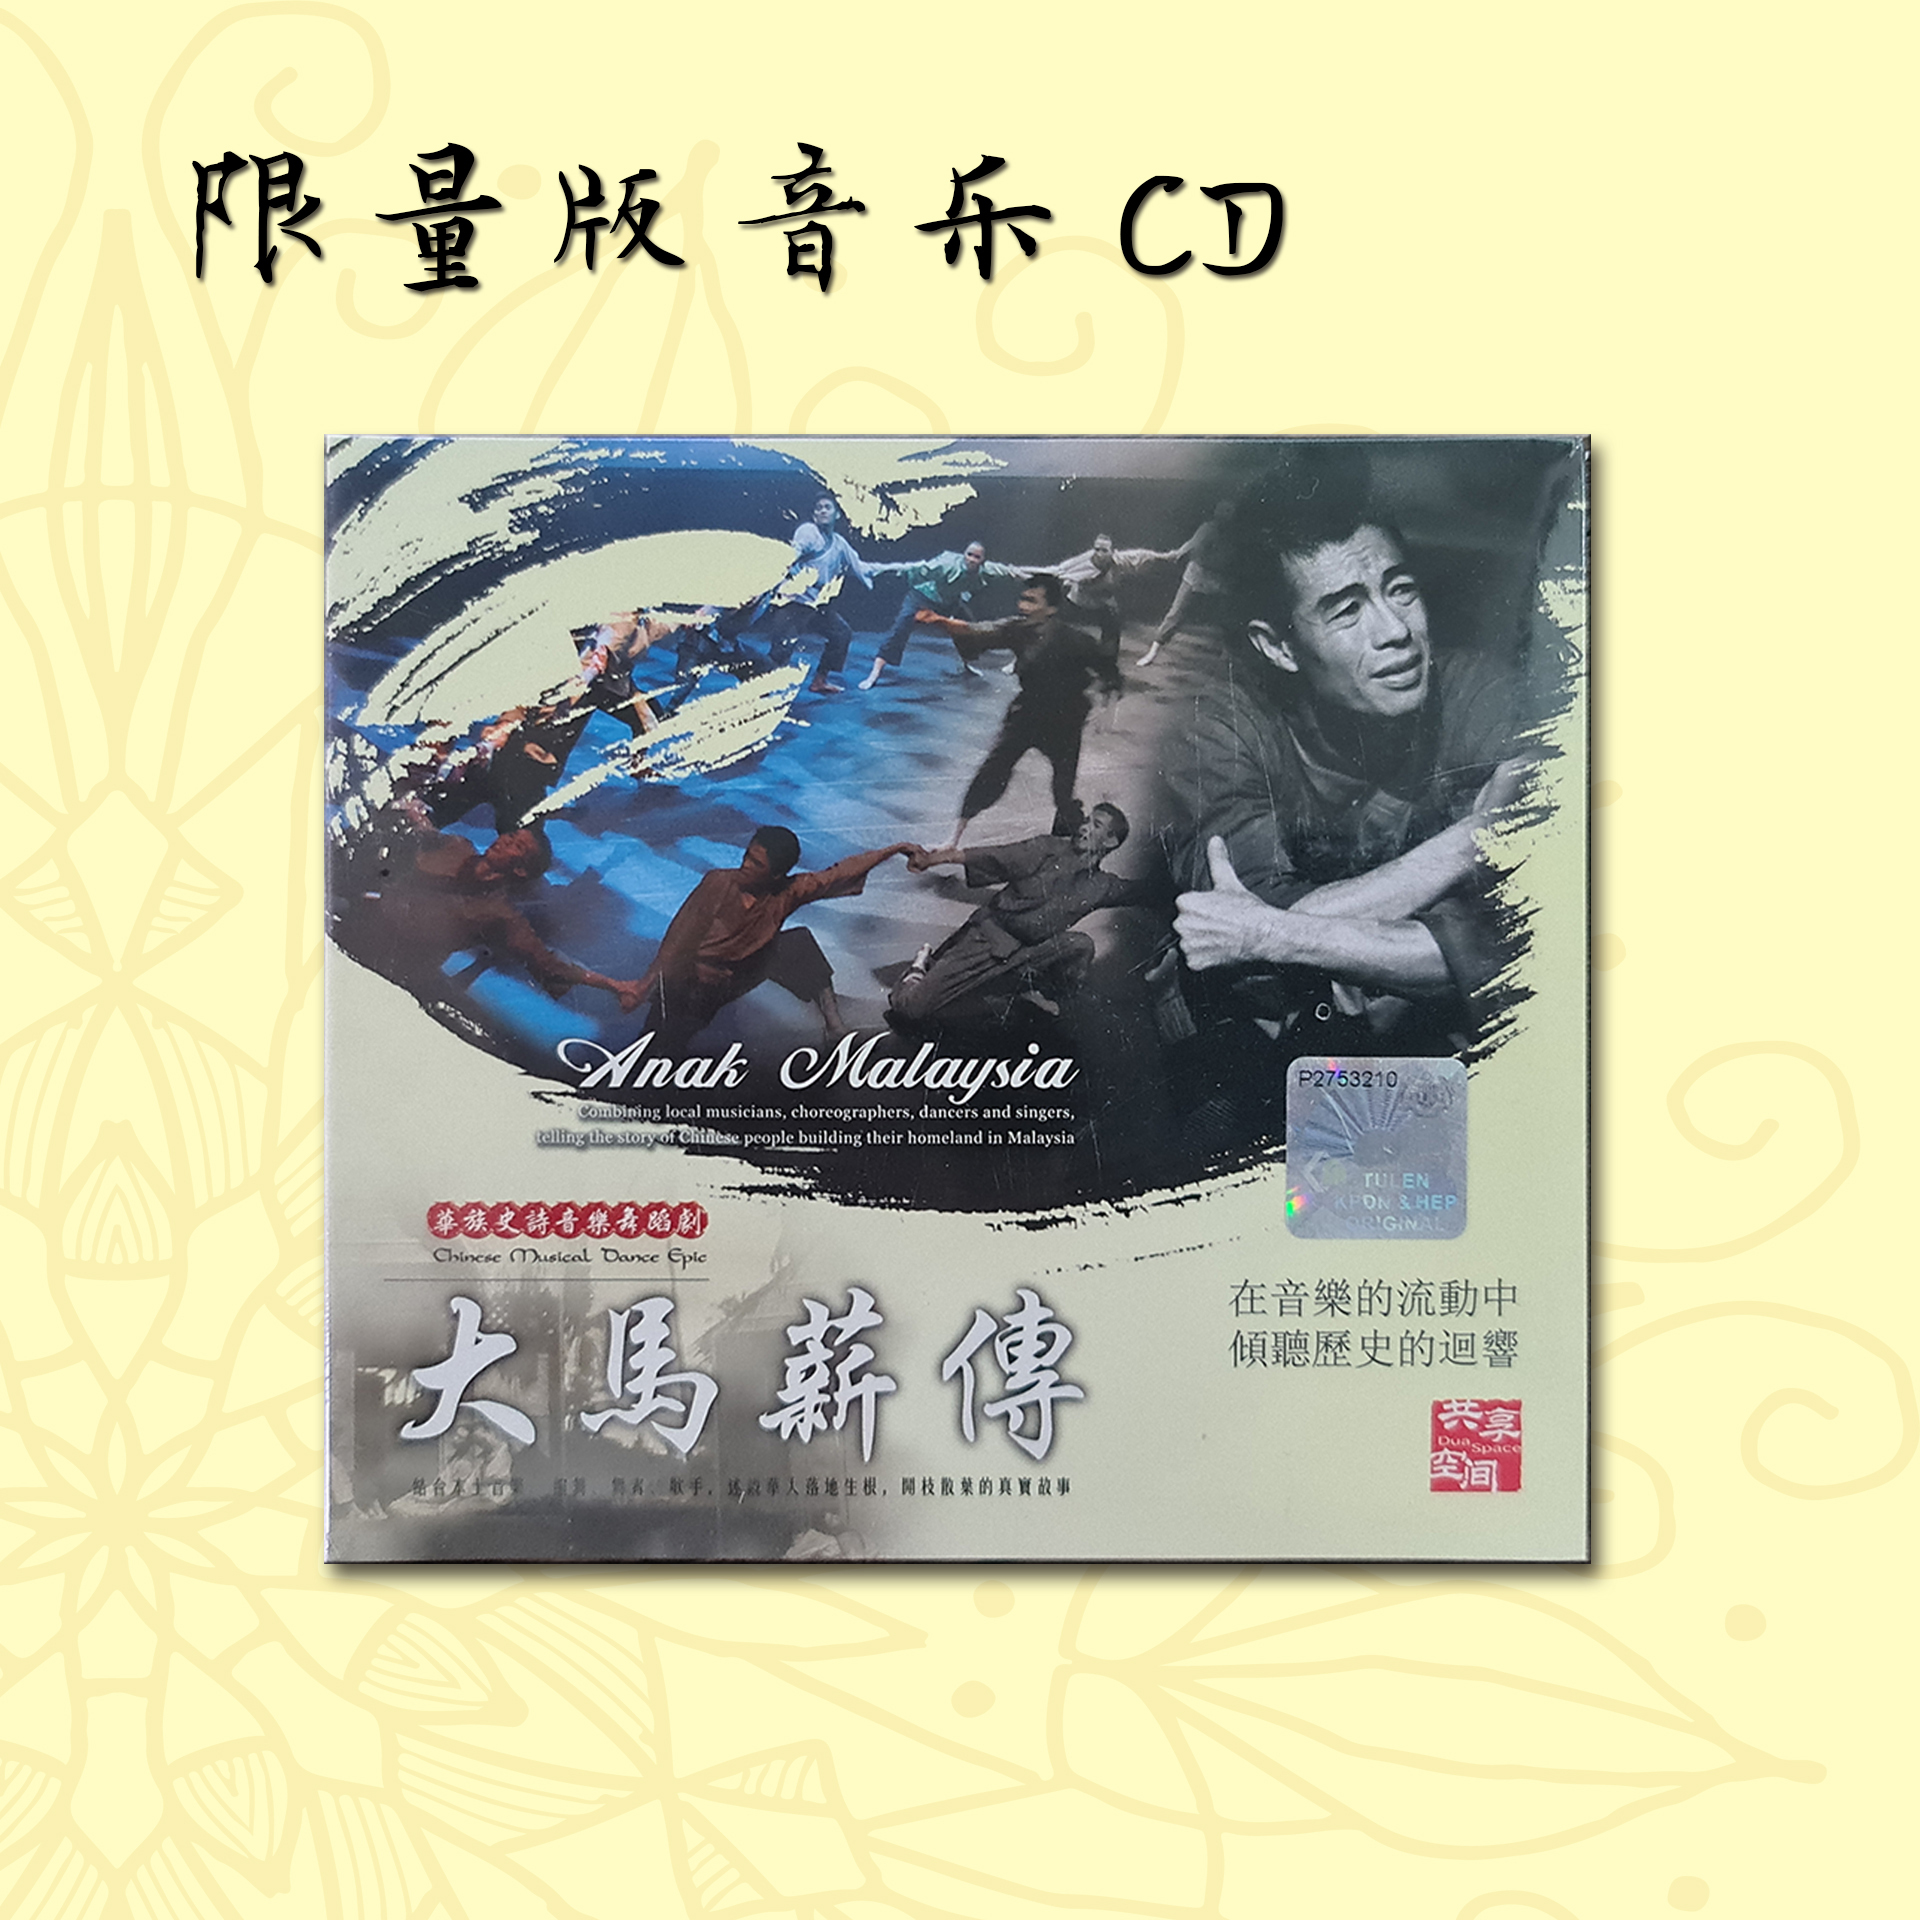 《大马薪传Anak Malaysia》珍藏版精装DVD/音乐CD